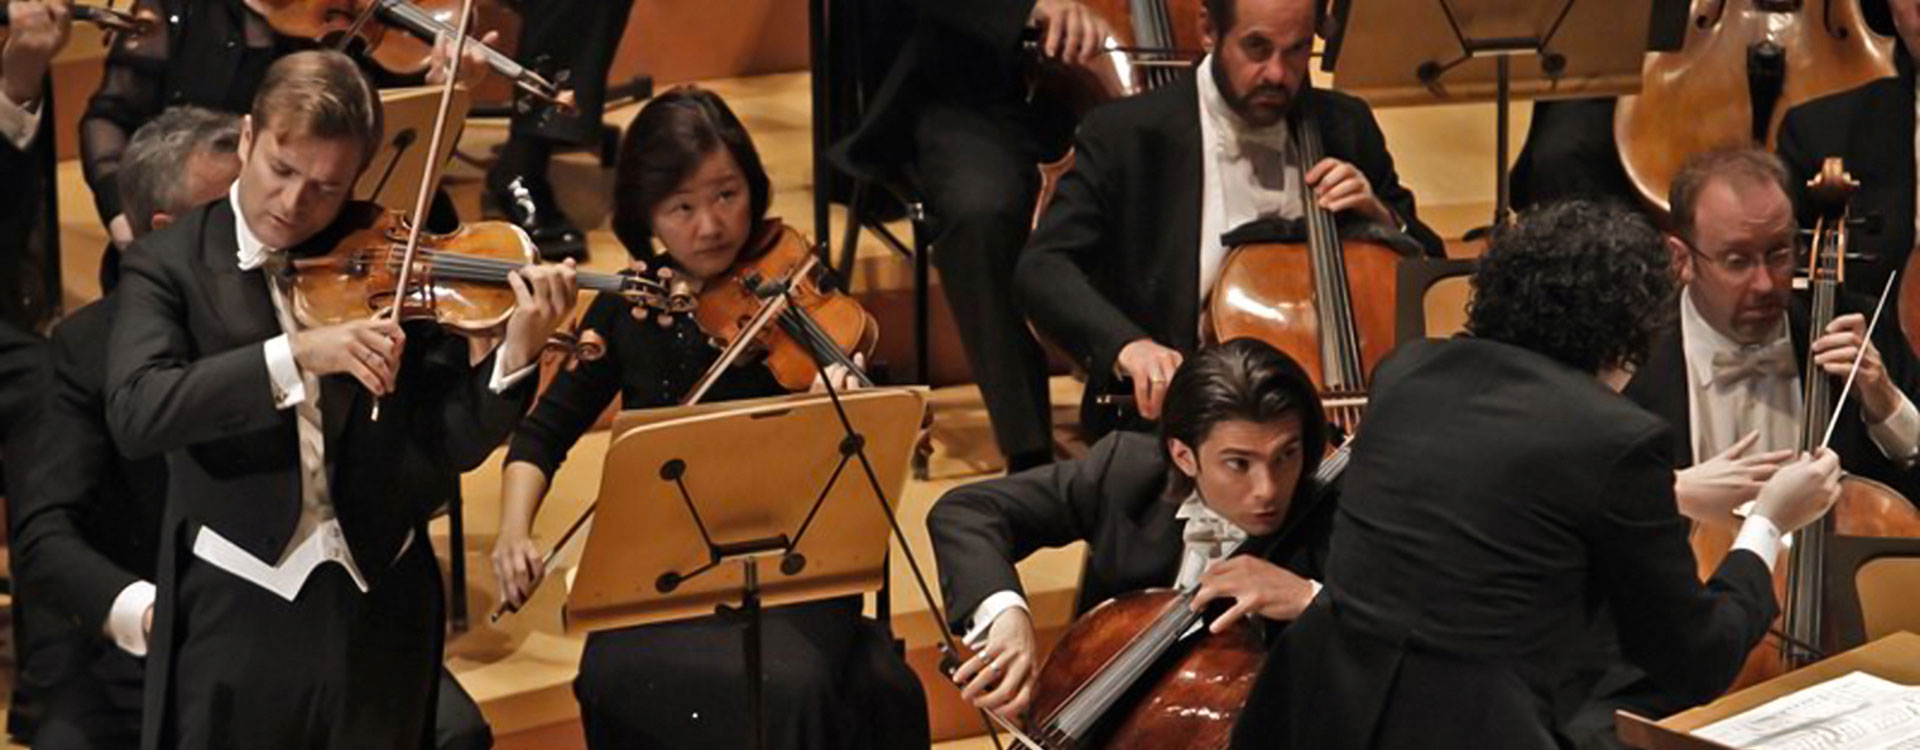 LA Phil Live: Dudamel conducts Brahms